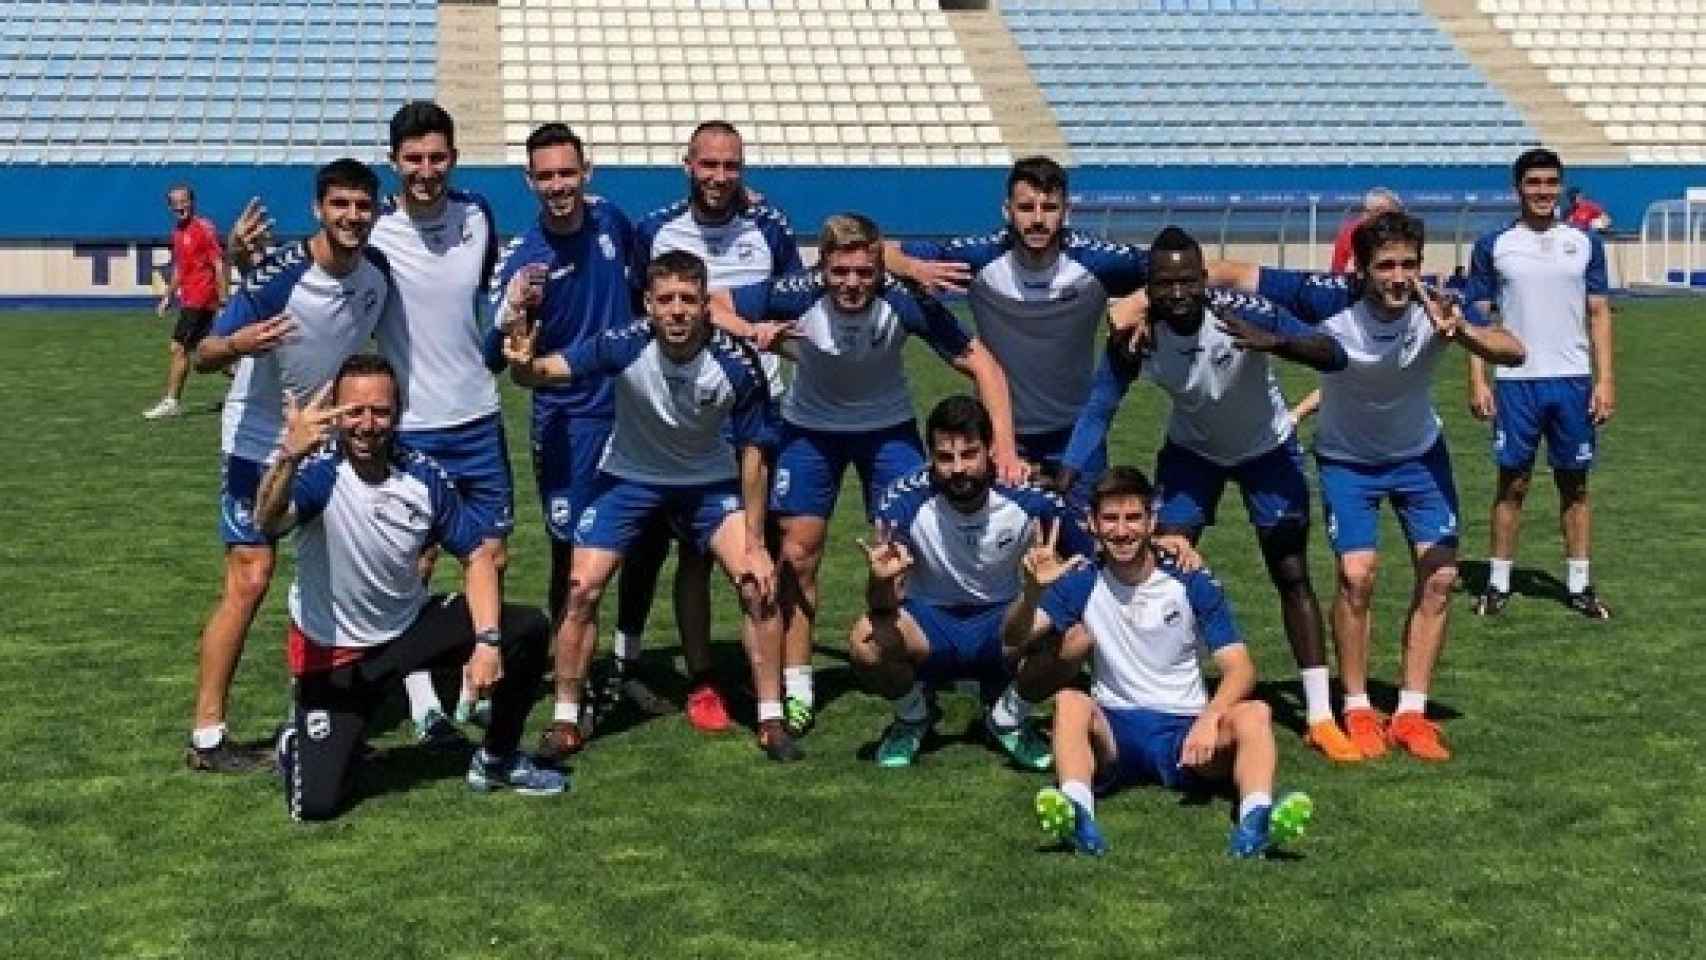 Jugadores del Lorca en un entrenamiento. Foto: Instagram (@lorcafutbolclubsad)